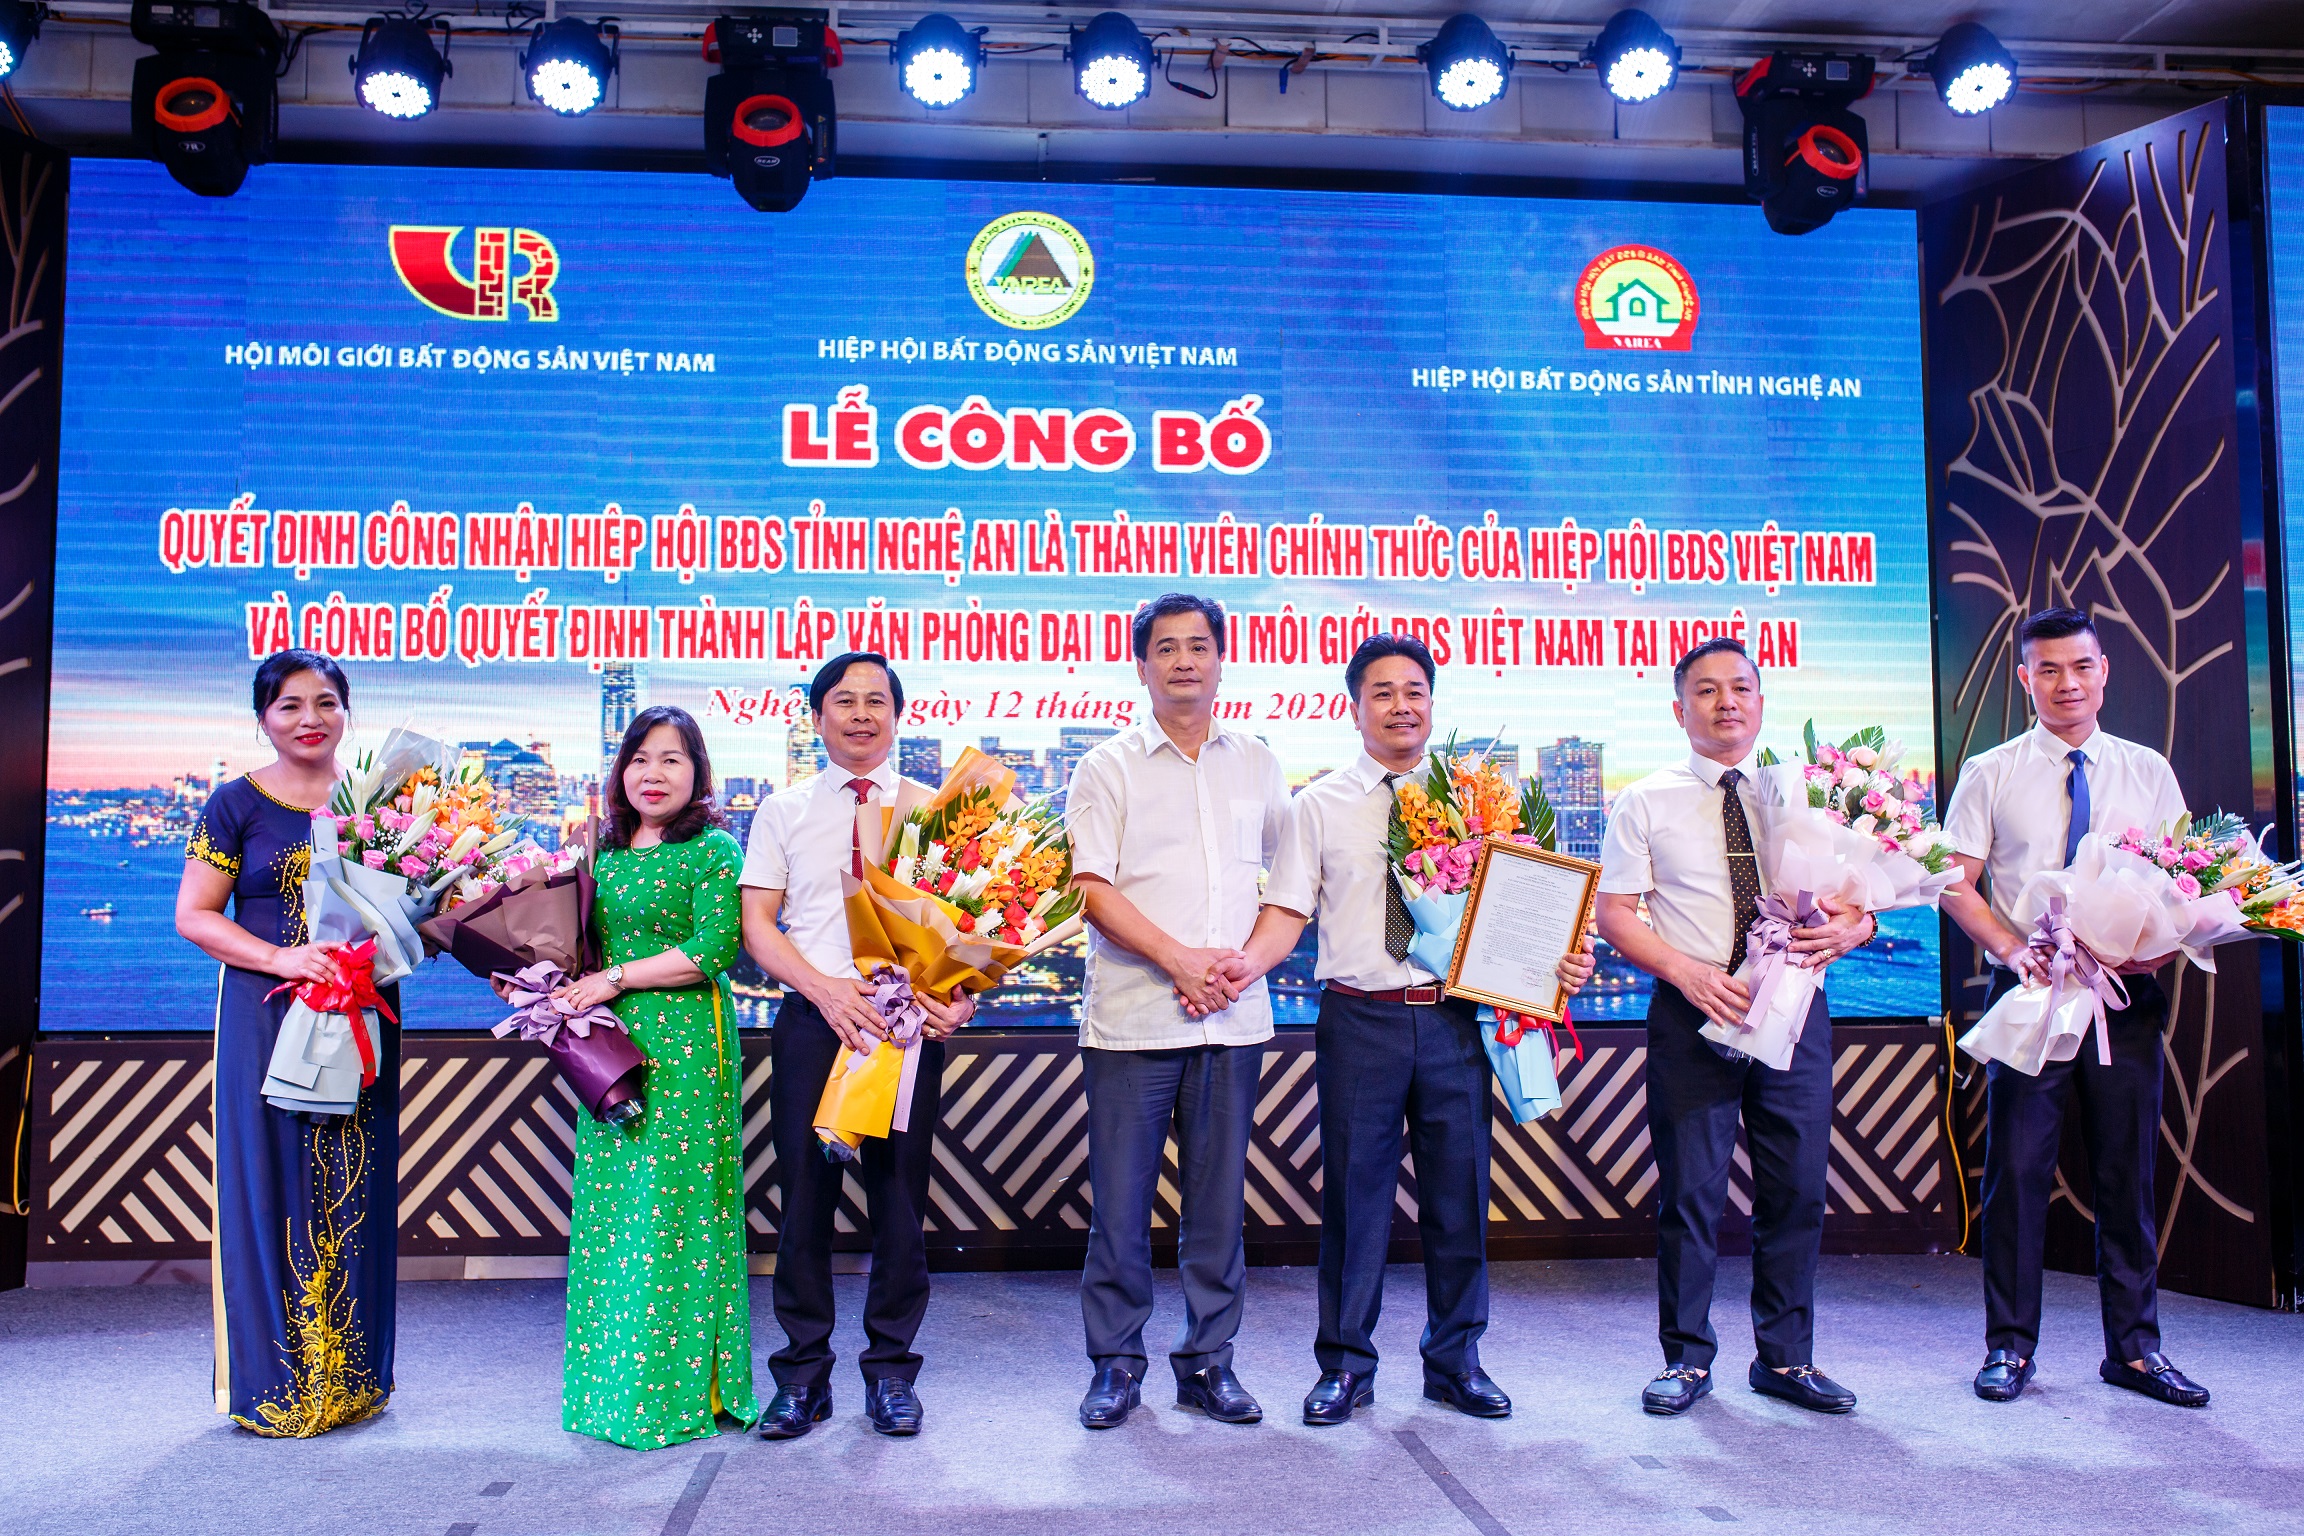 Hội Môi giới bất động sản Việt Nam ra mắt văn phòng đại diện tại Nghệ An